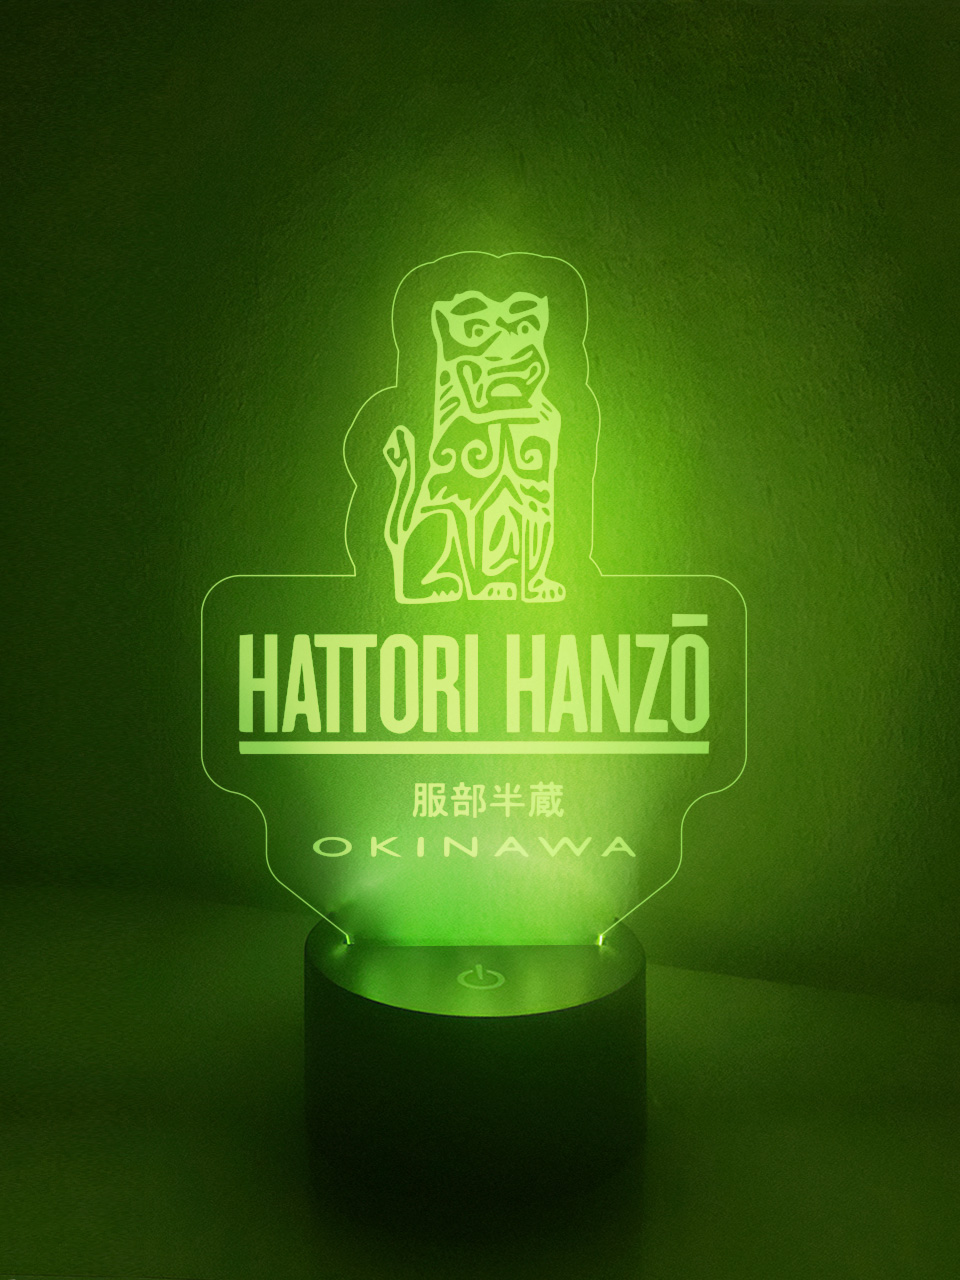 Hattori Hanzo Lamp